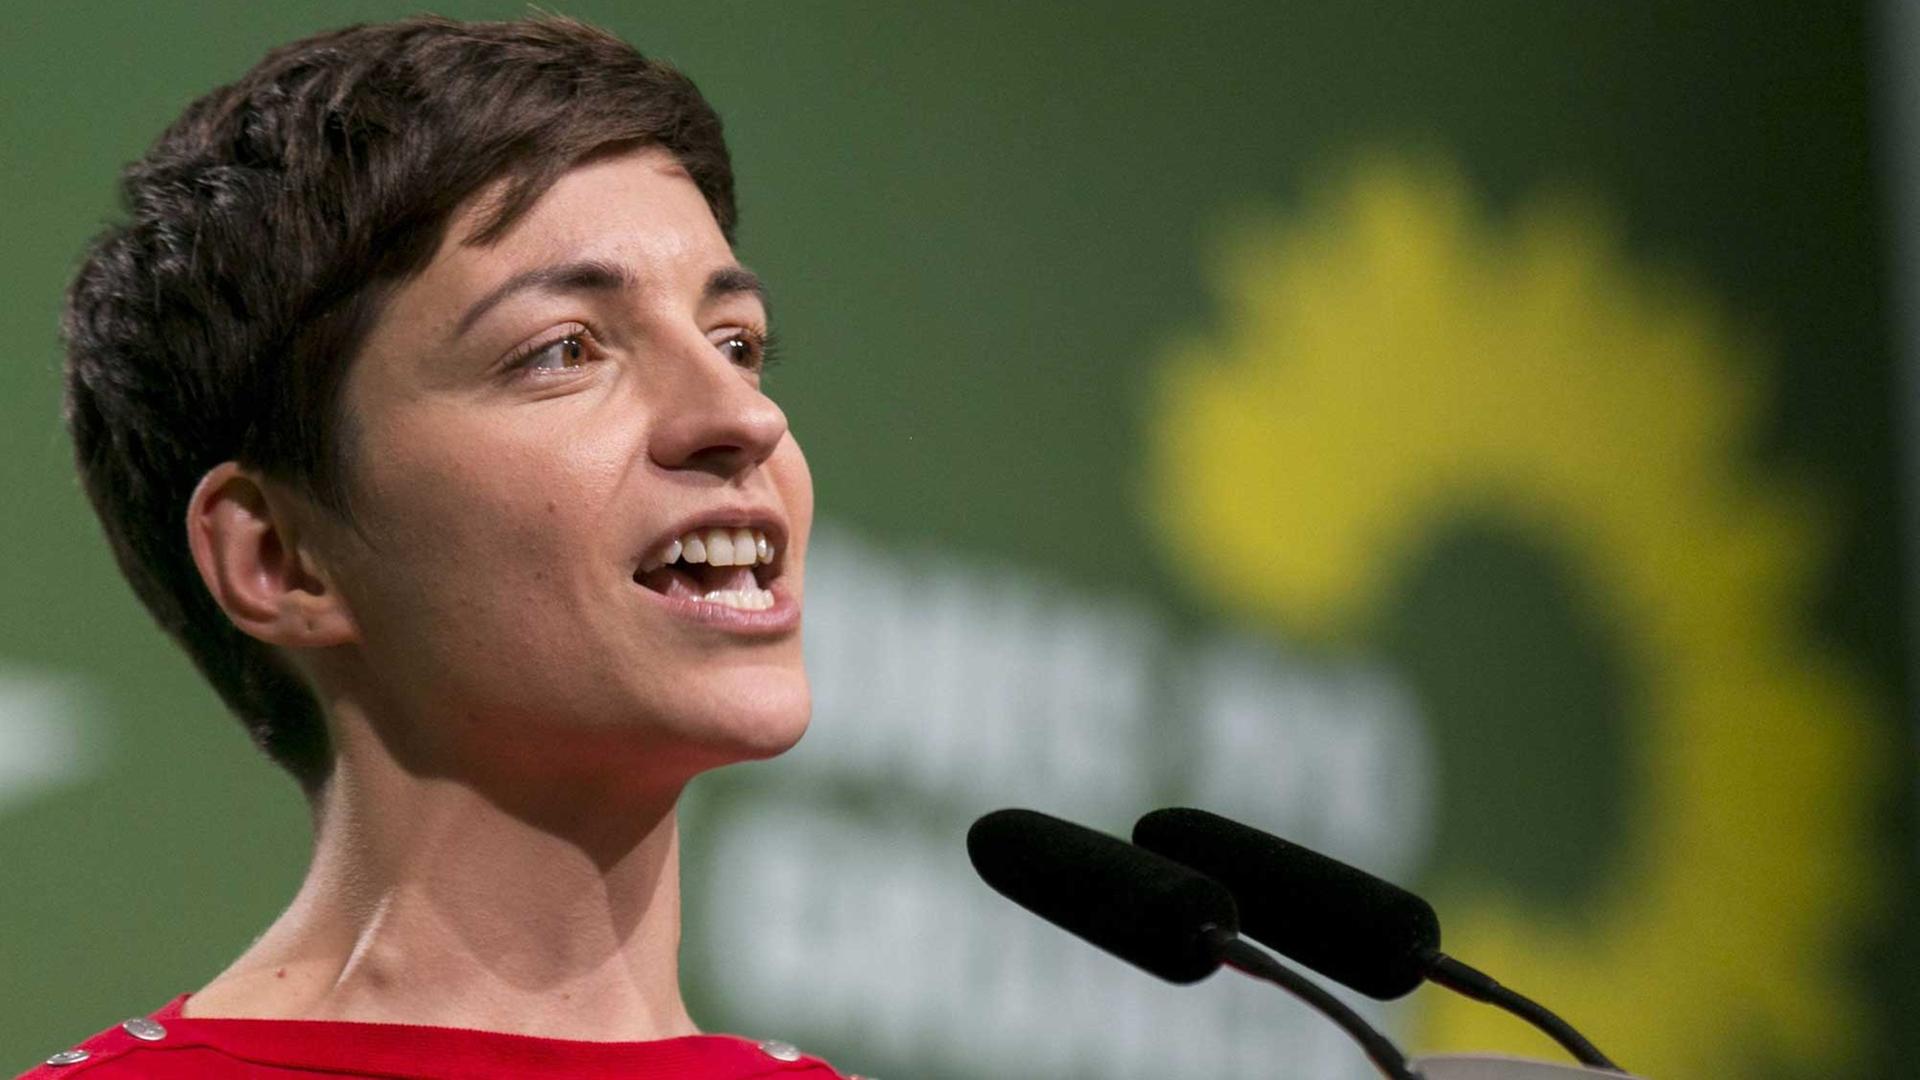 Ska Keller am 09.02.2014 auf einem Parteitag der Grünen.